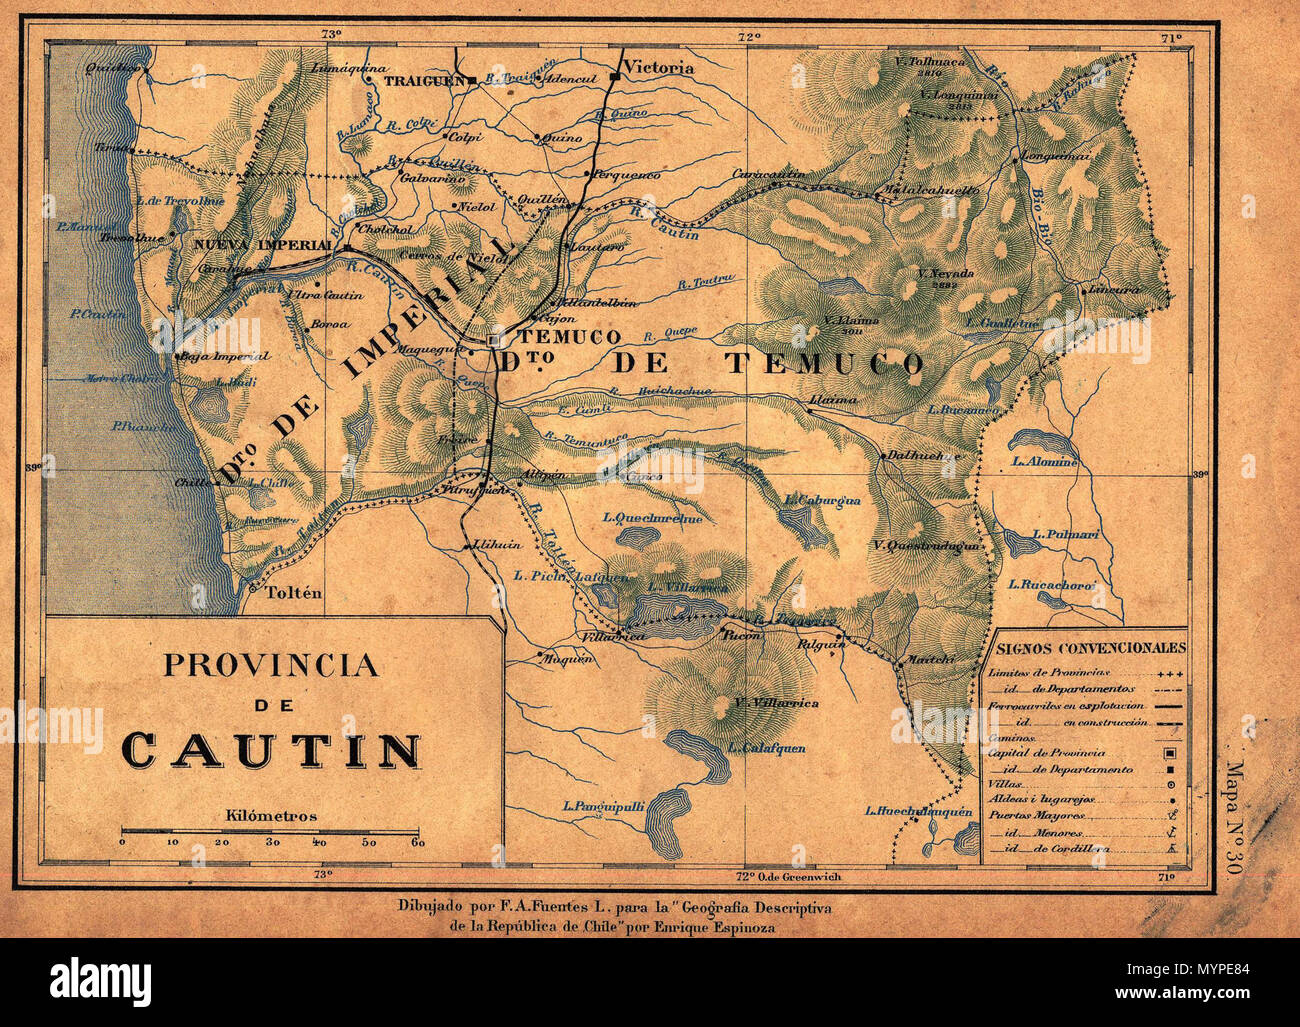 439 Provincia de Cautín - Geografía Descriptiva República de Chile - Enrique Espinoza 1897 Foto Stock